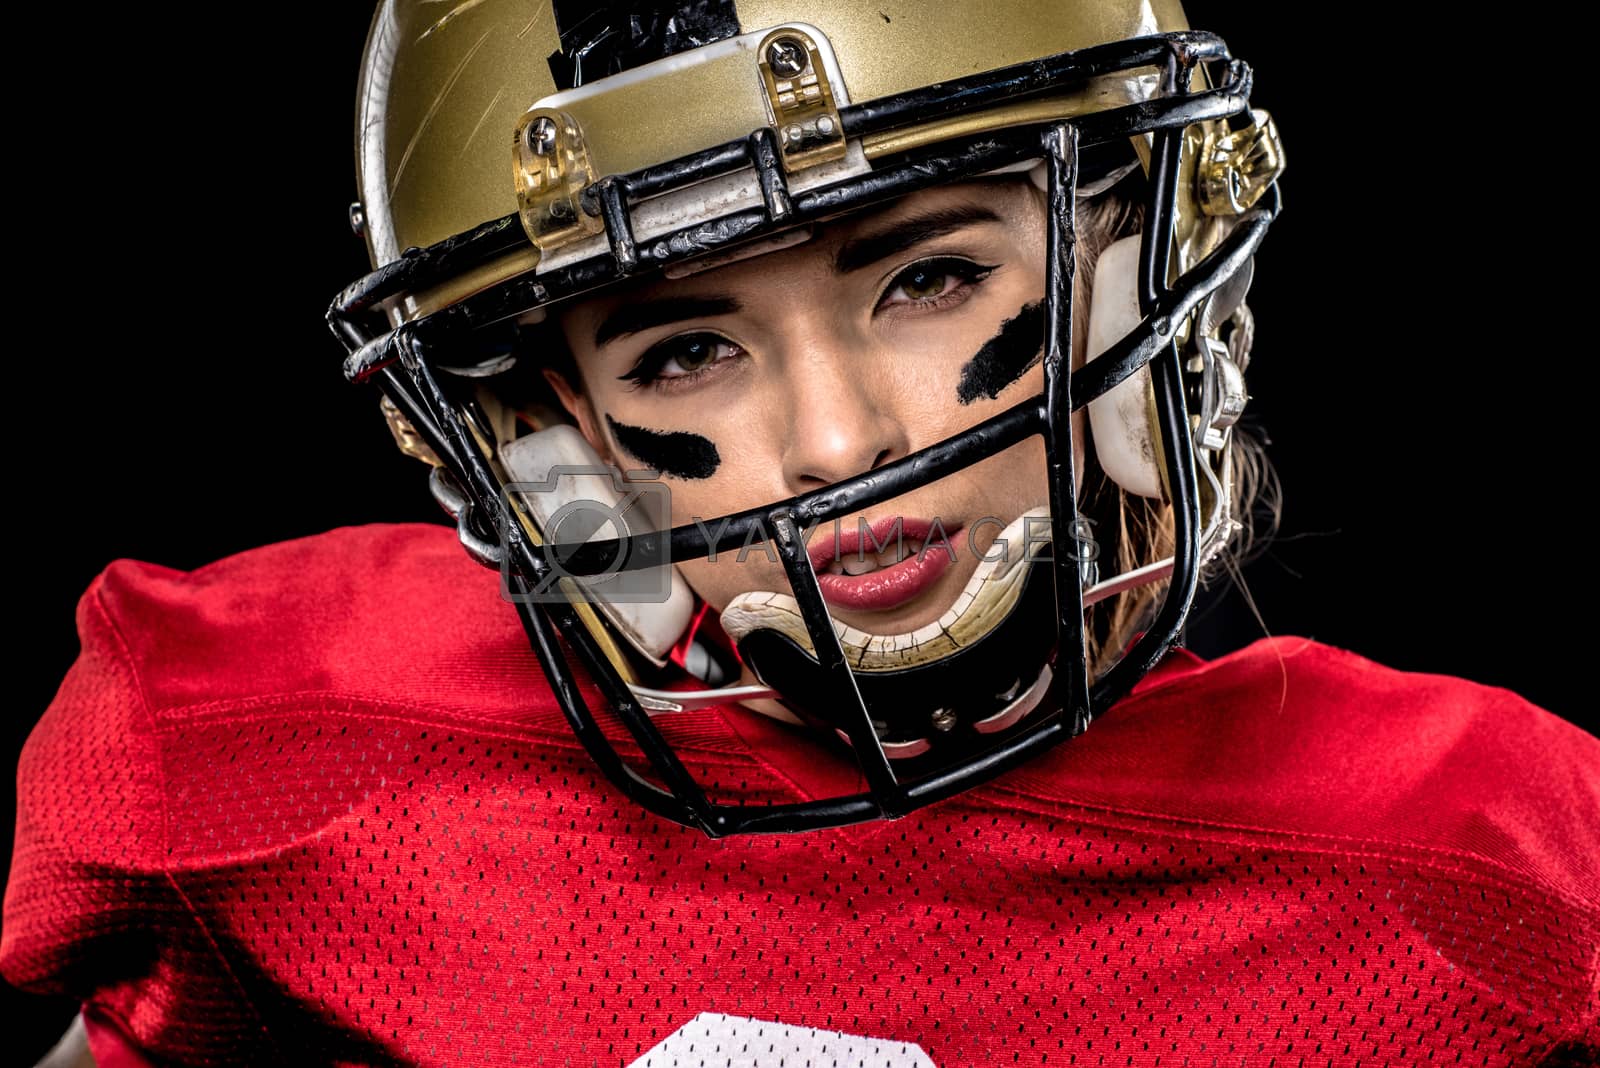 Royalty free image of American football player in helmet by LightFieldStudios